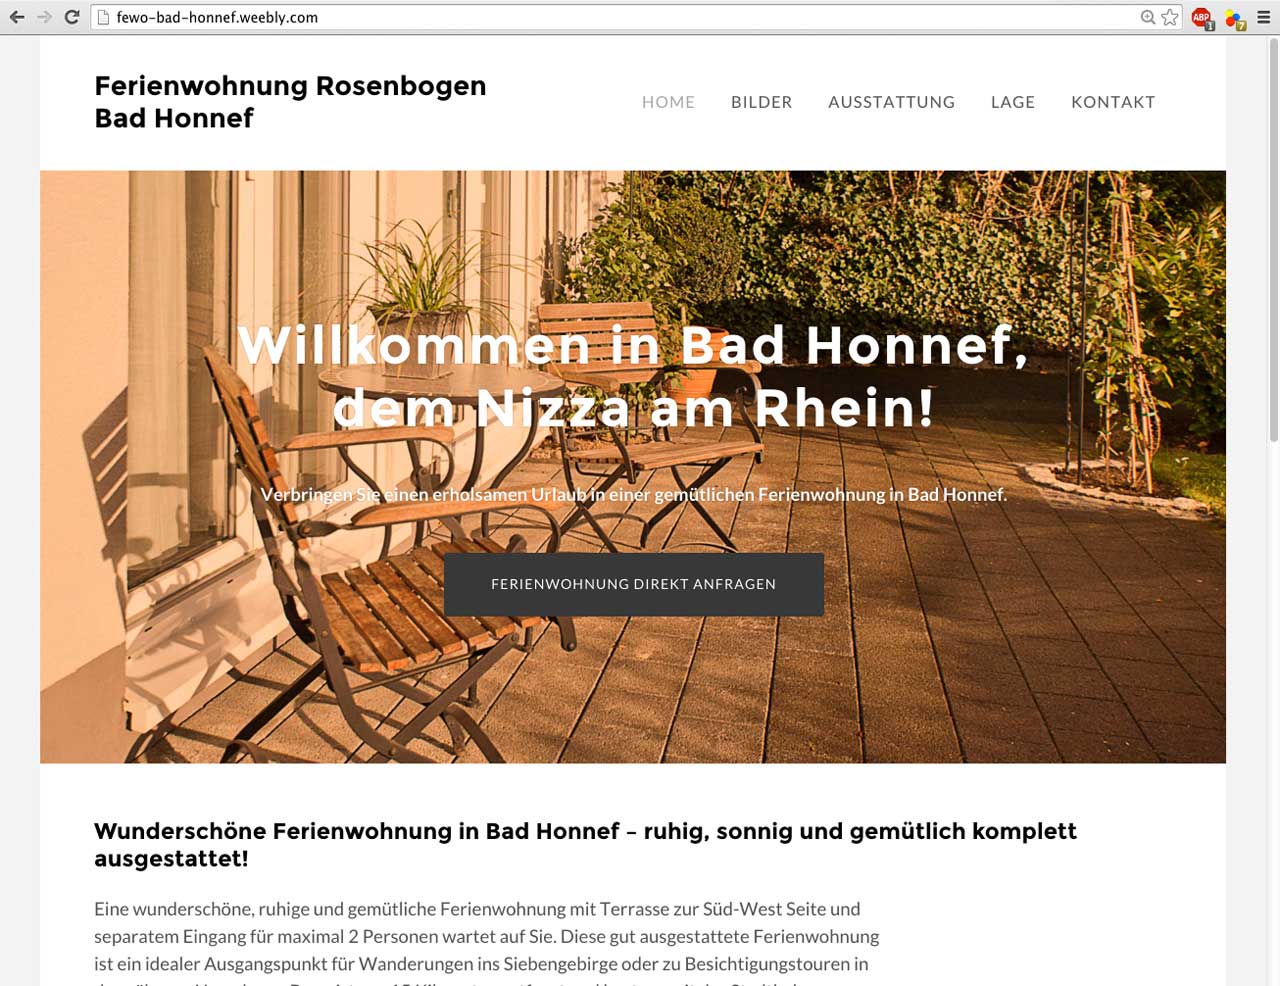 Ferienwohnung Bad Honnef Website